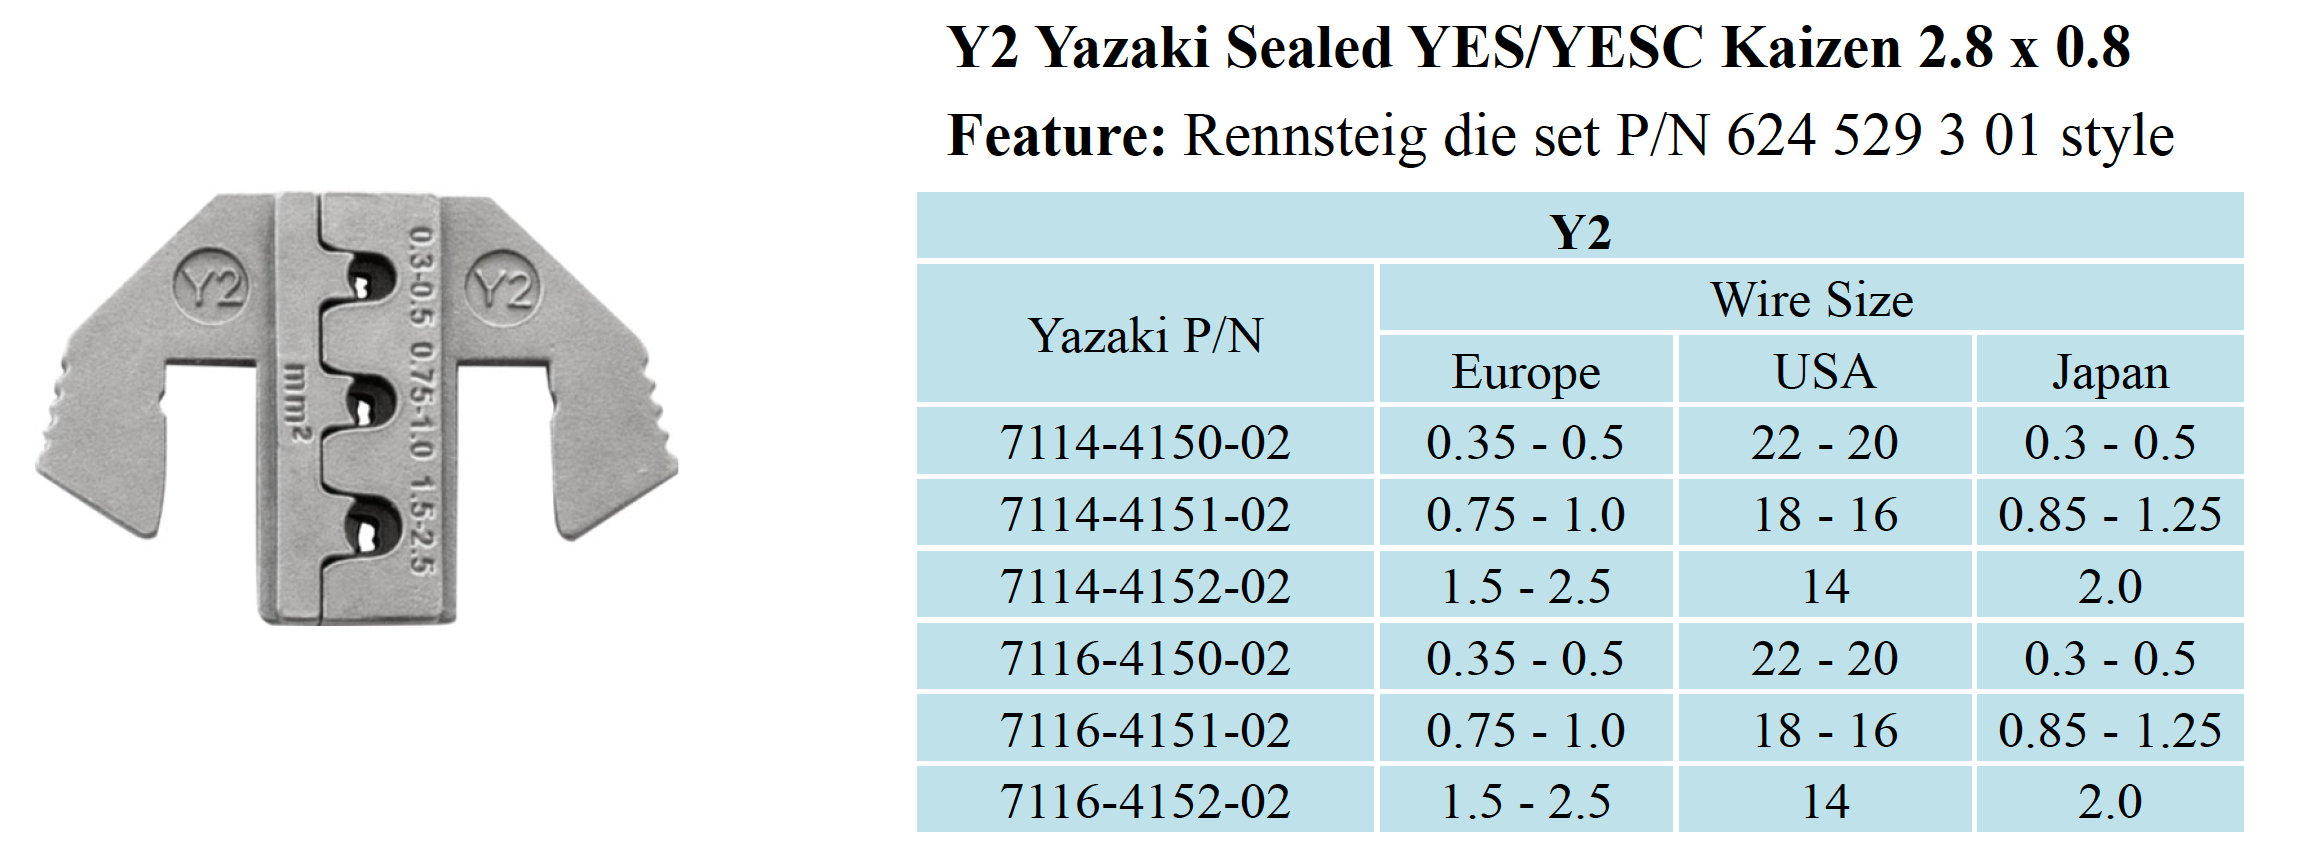 Crimping Tool Die - Y2 Die for Yazaki YES/YESC Kaizen 2.8 Sealed Terminal AWG 22-20/18-16/14 - Tool Guy Republic